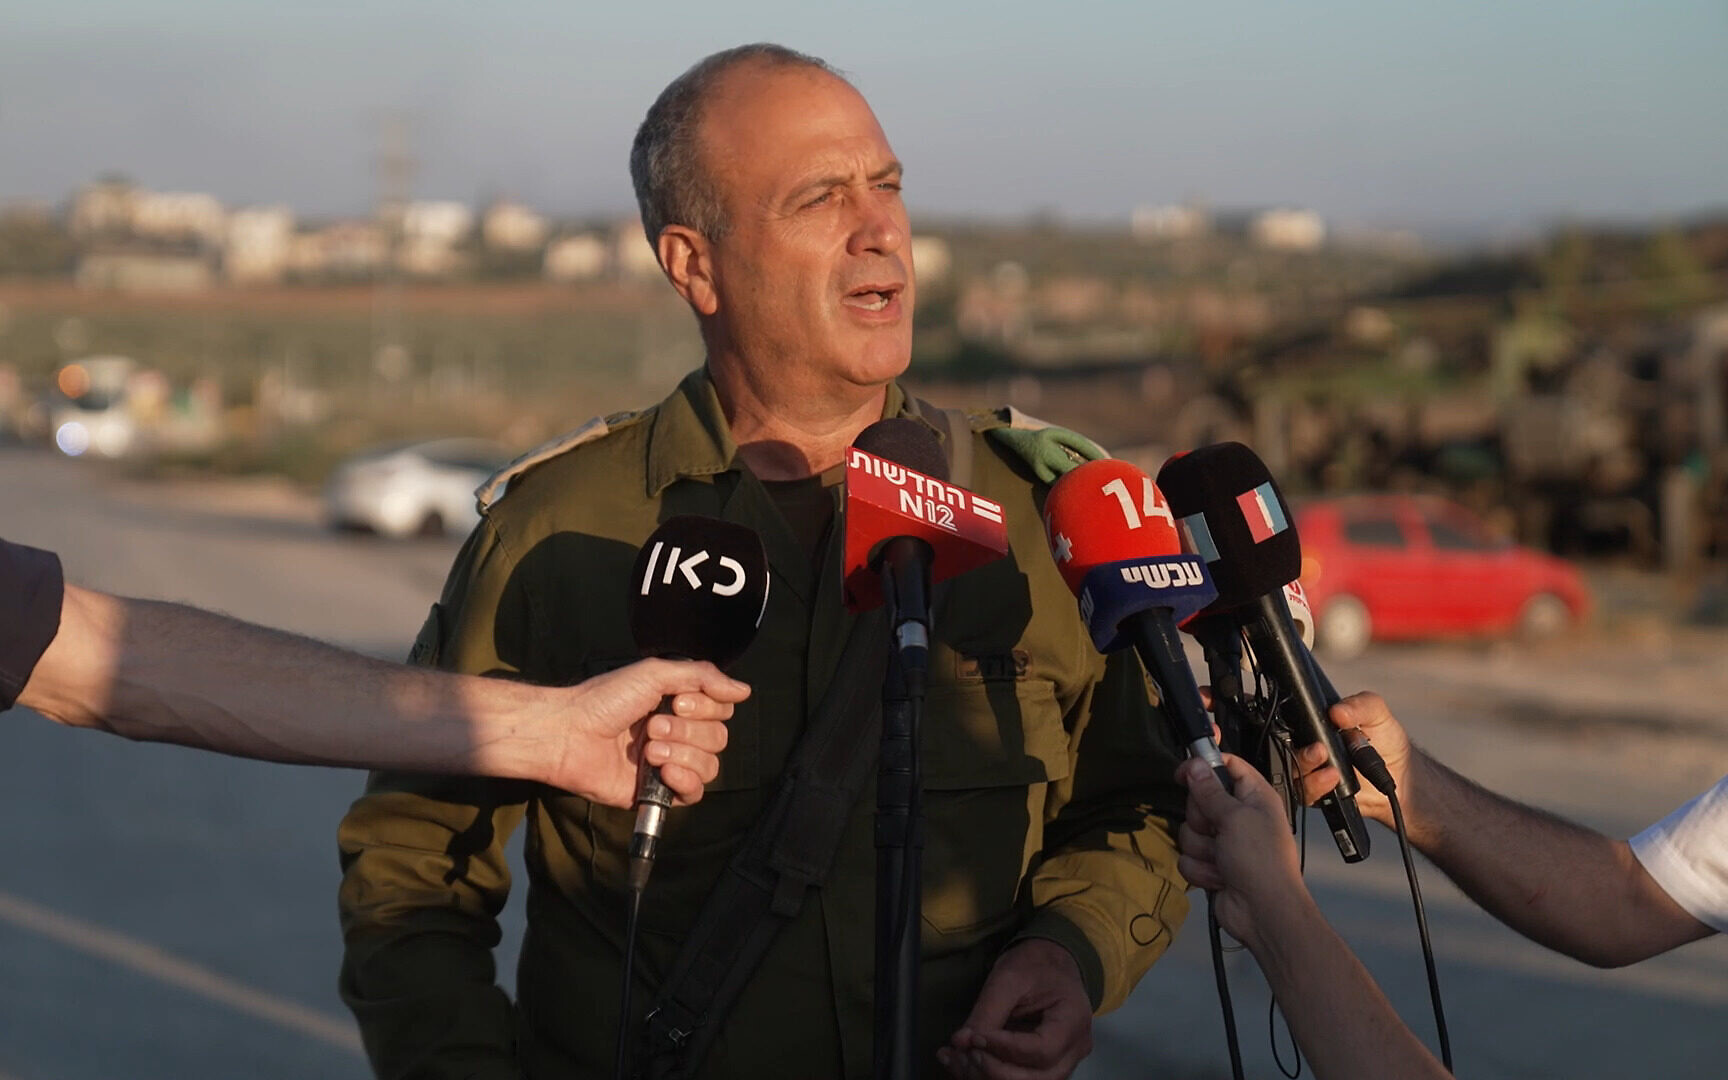 L'estrema destra minaccia il comandante in capo dell'esercito in Cisgiordania perché è poco duro